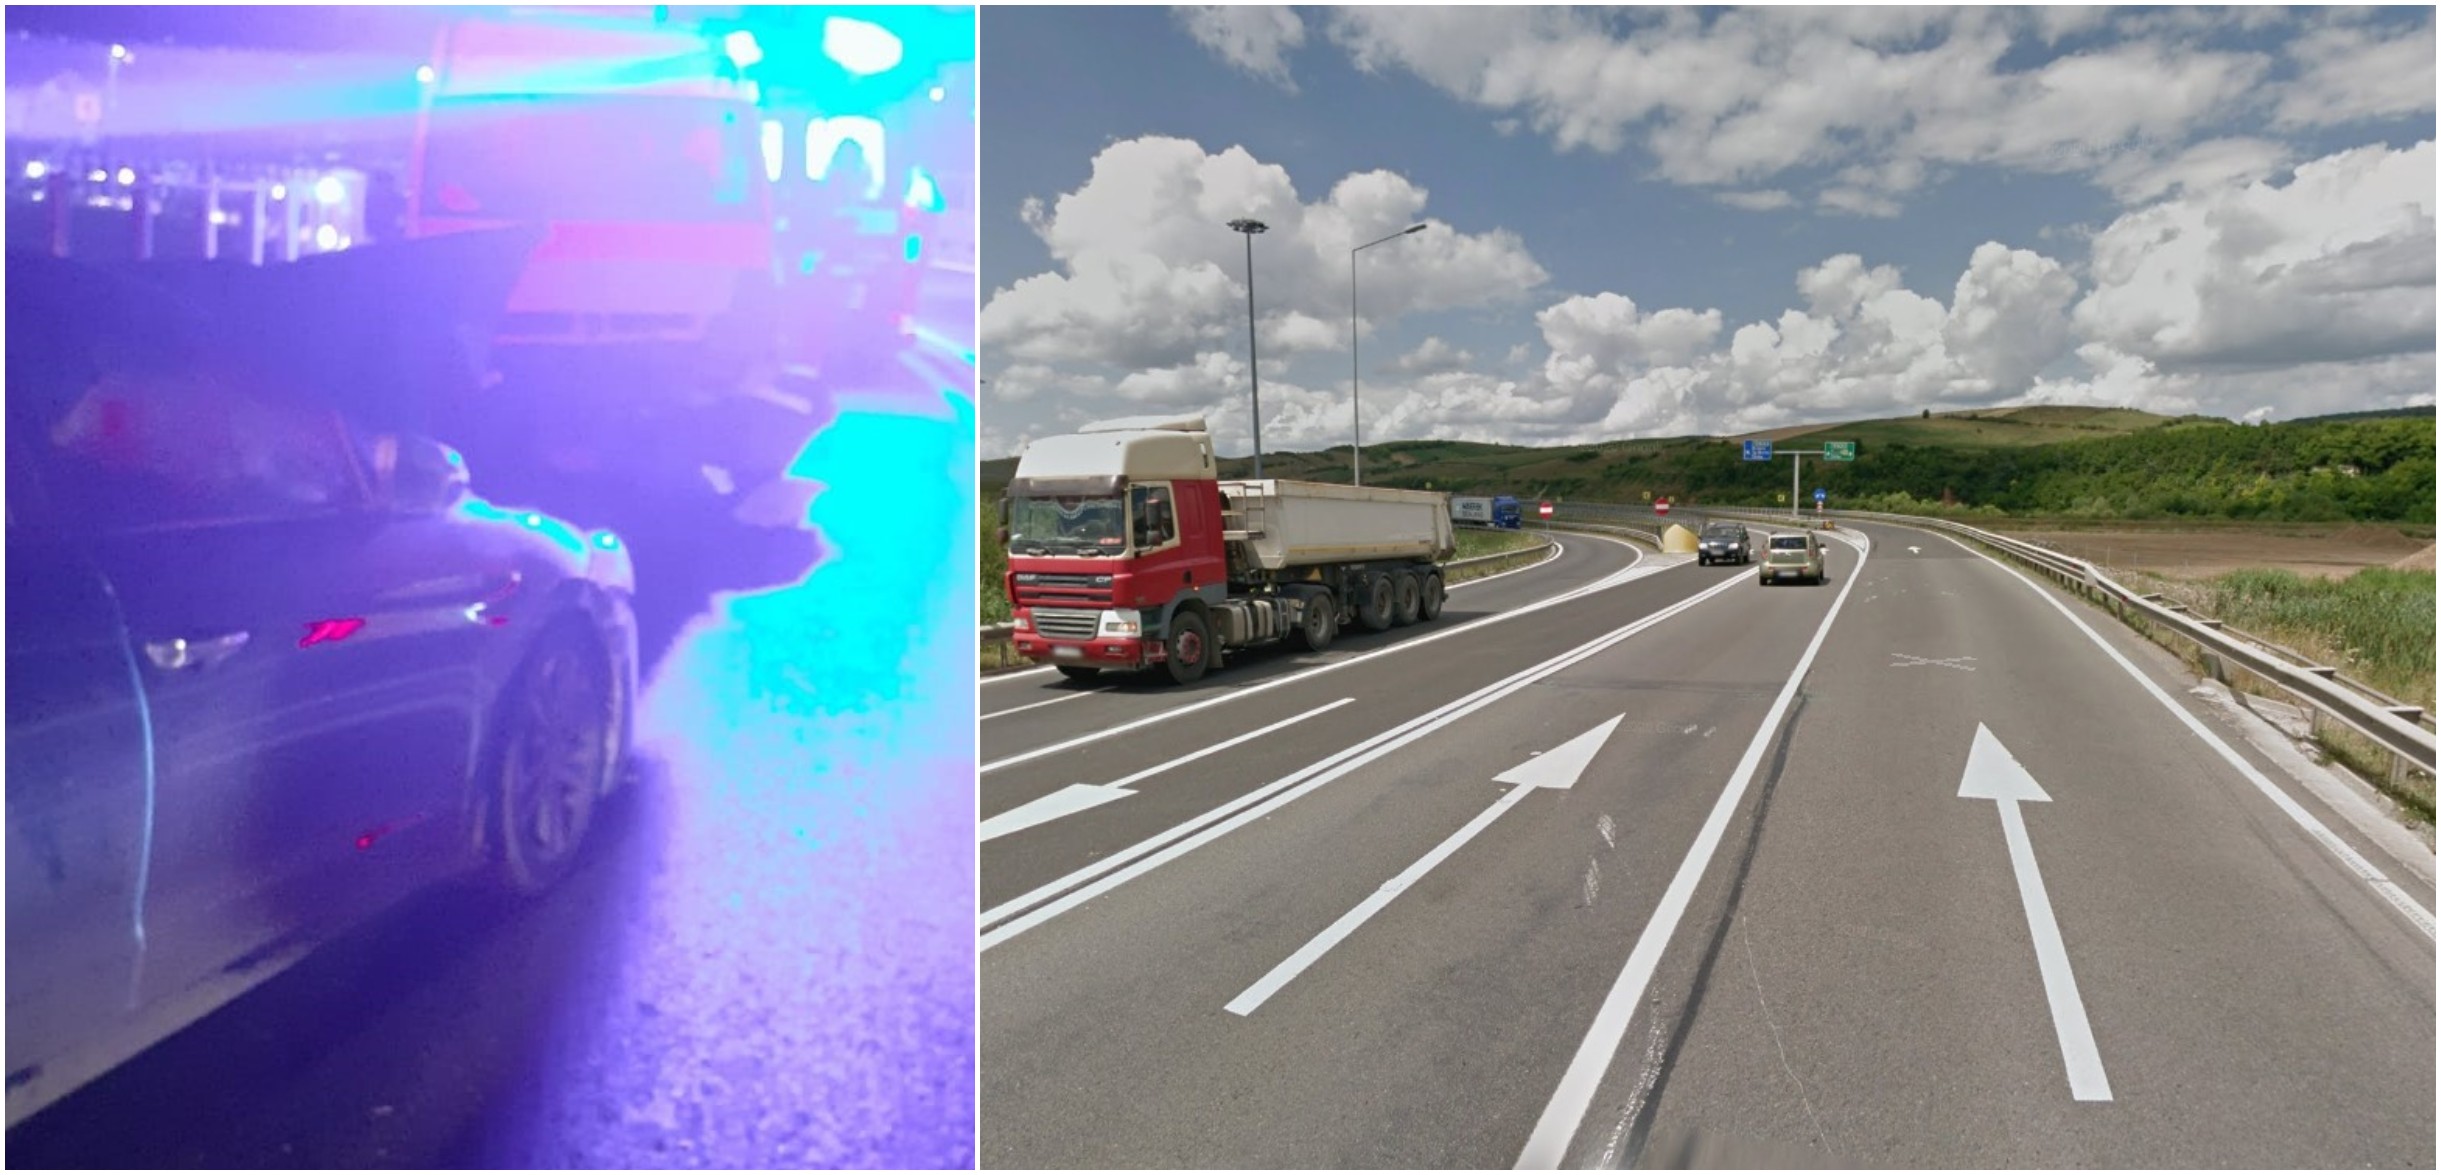 Pe autostrada A3, în zona Gilău, au fost provocate multe accidente în ultima vreme / FOTO 1: ISU Cluj. FOTO 2: captură ecrean - Google Maps